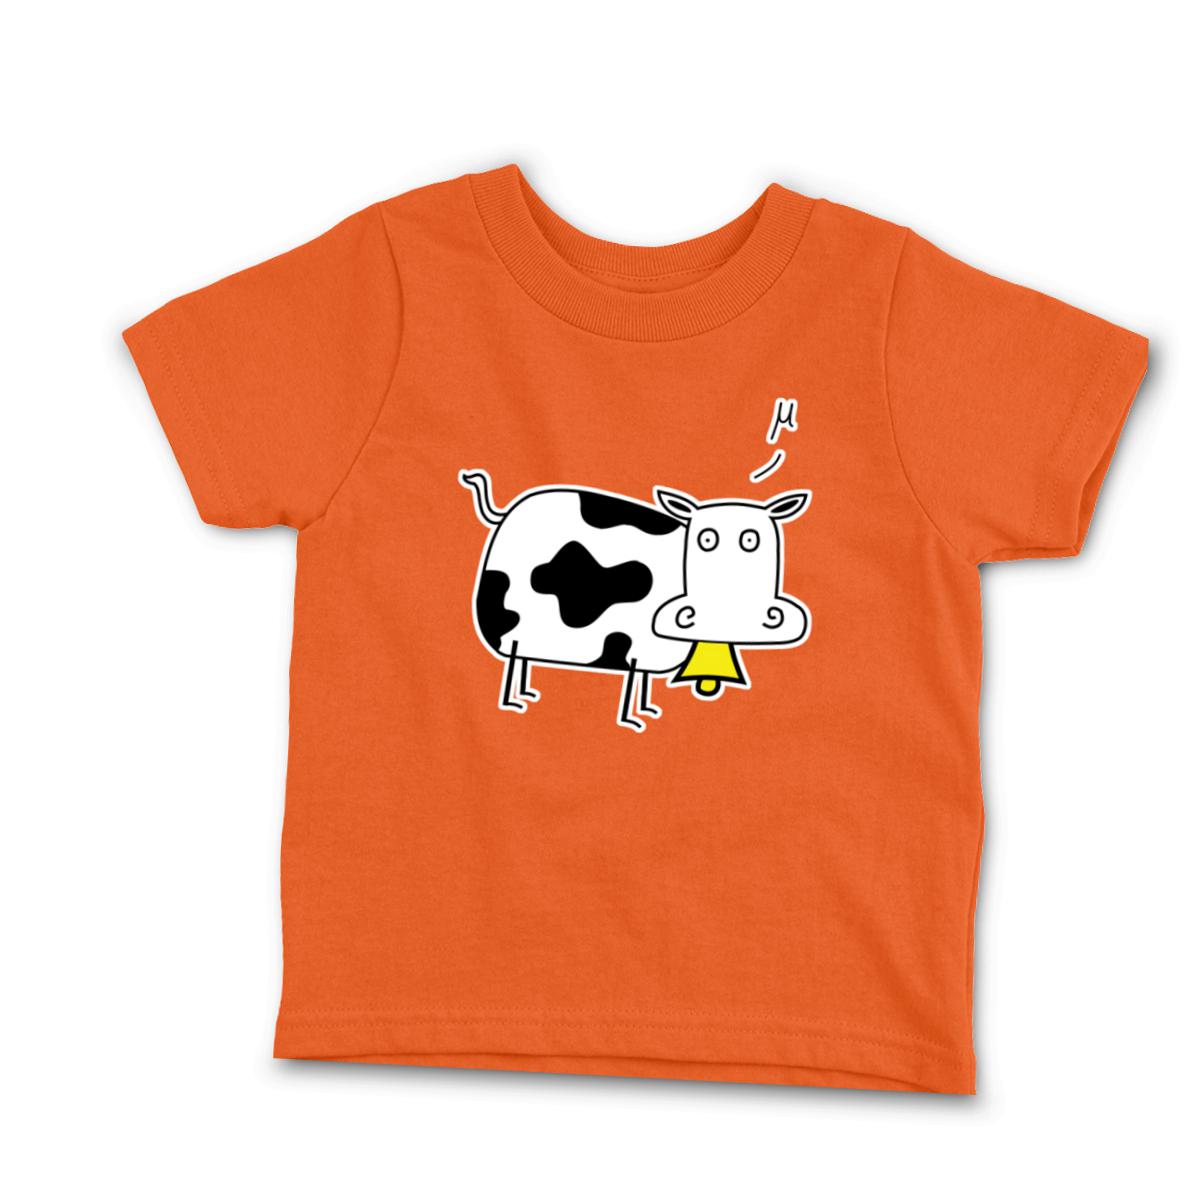 Mu Cow Toddler Tee 2T orange